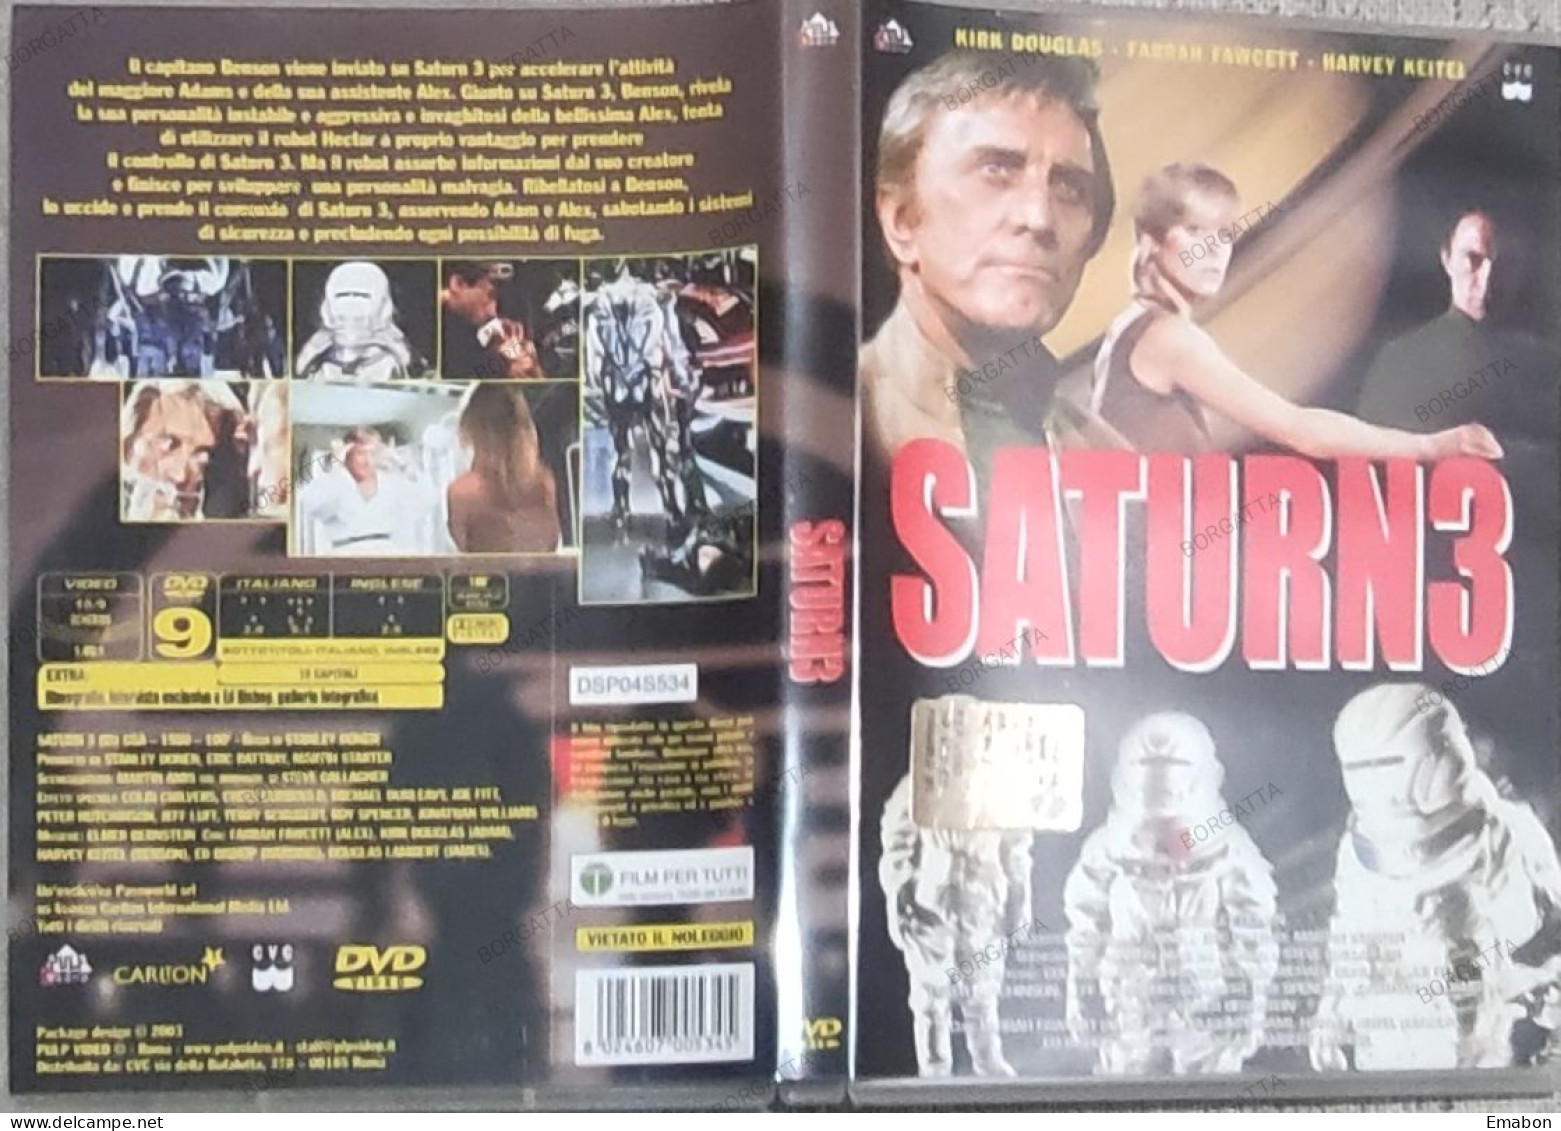 BORGATTA - FANTASCIENZA - DVD SATURN 3  - PAL 2 - PULP VIDEO 2003 - USATO In Buono Stato - Sci-Fi, Fantasy